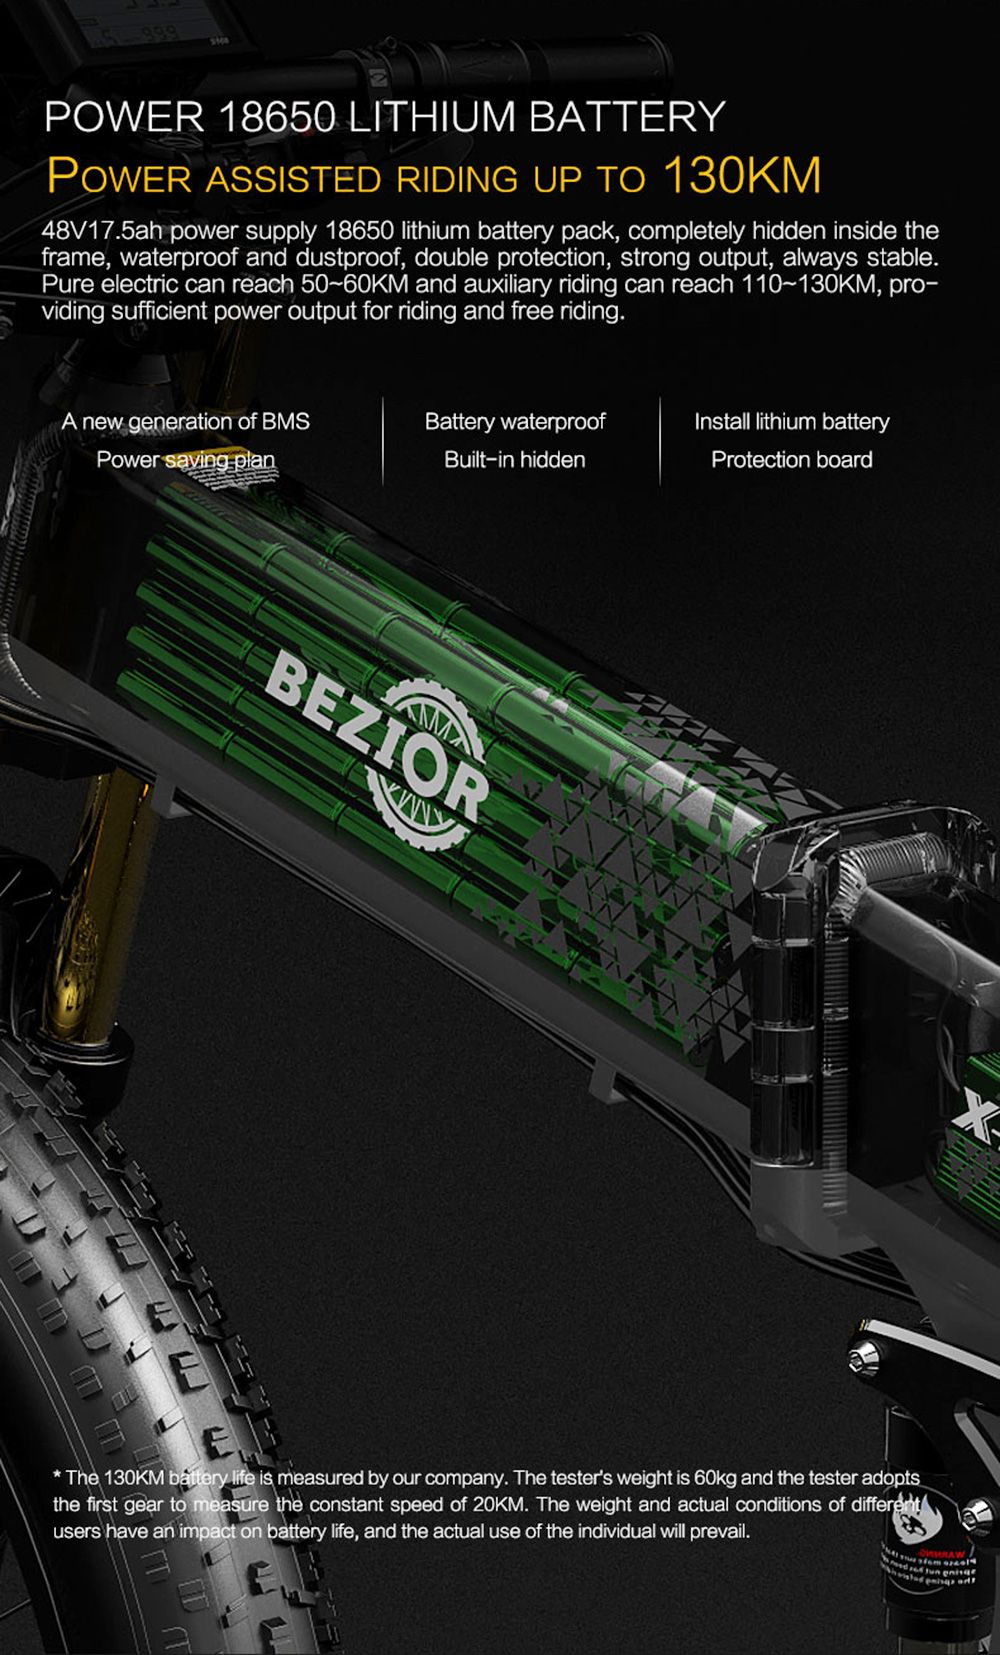 BEZIOR X-PLUS Electric Bike 1500W Motor 48V 17.5Ah Battery 26*4.0 Pneumatiky Horský bicykel 40 km/h Maximálna rýchlosť 200 kg záťaže - červený